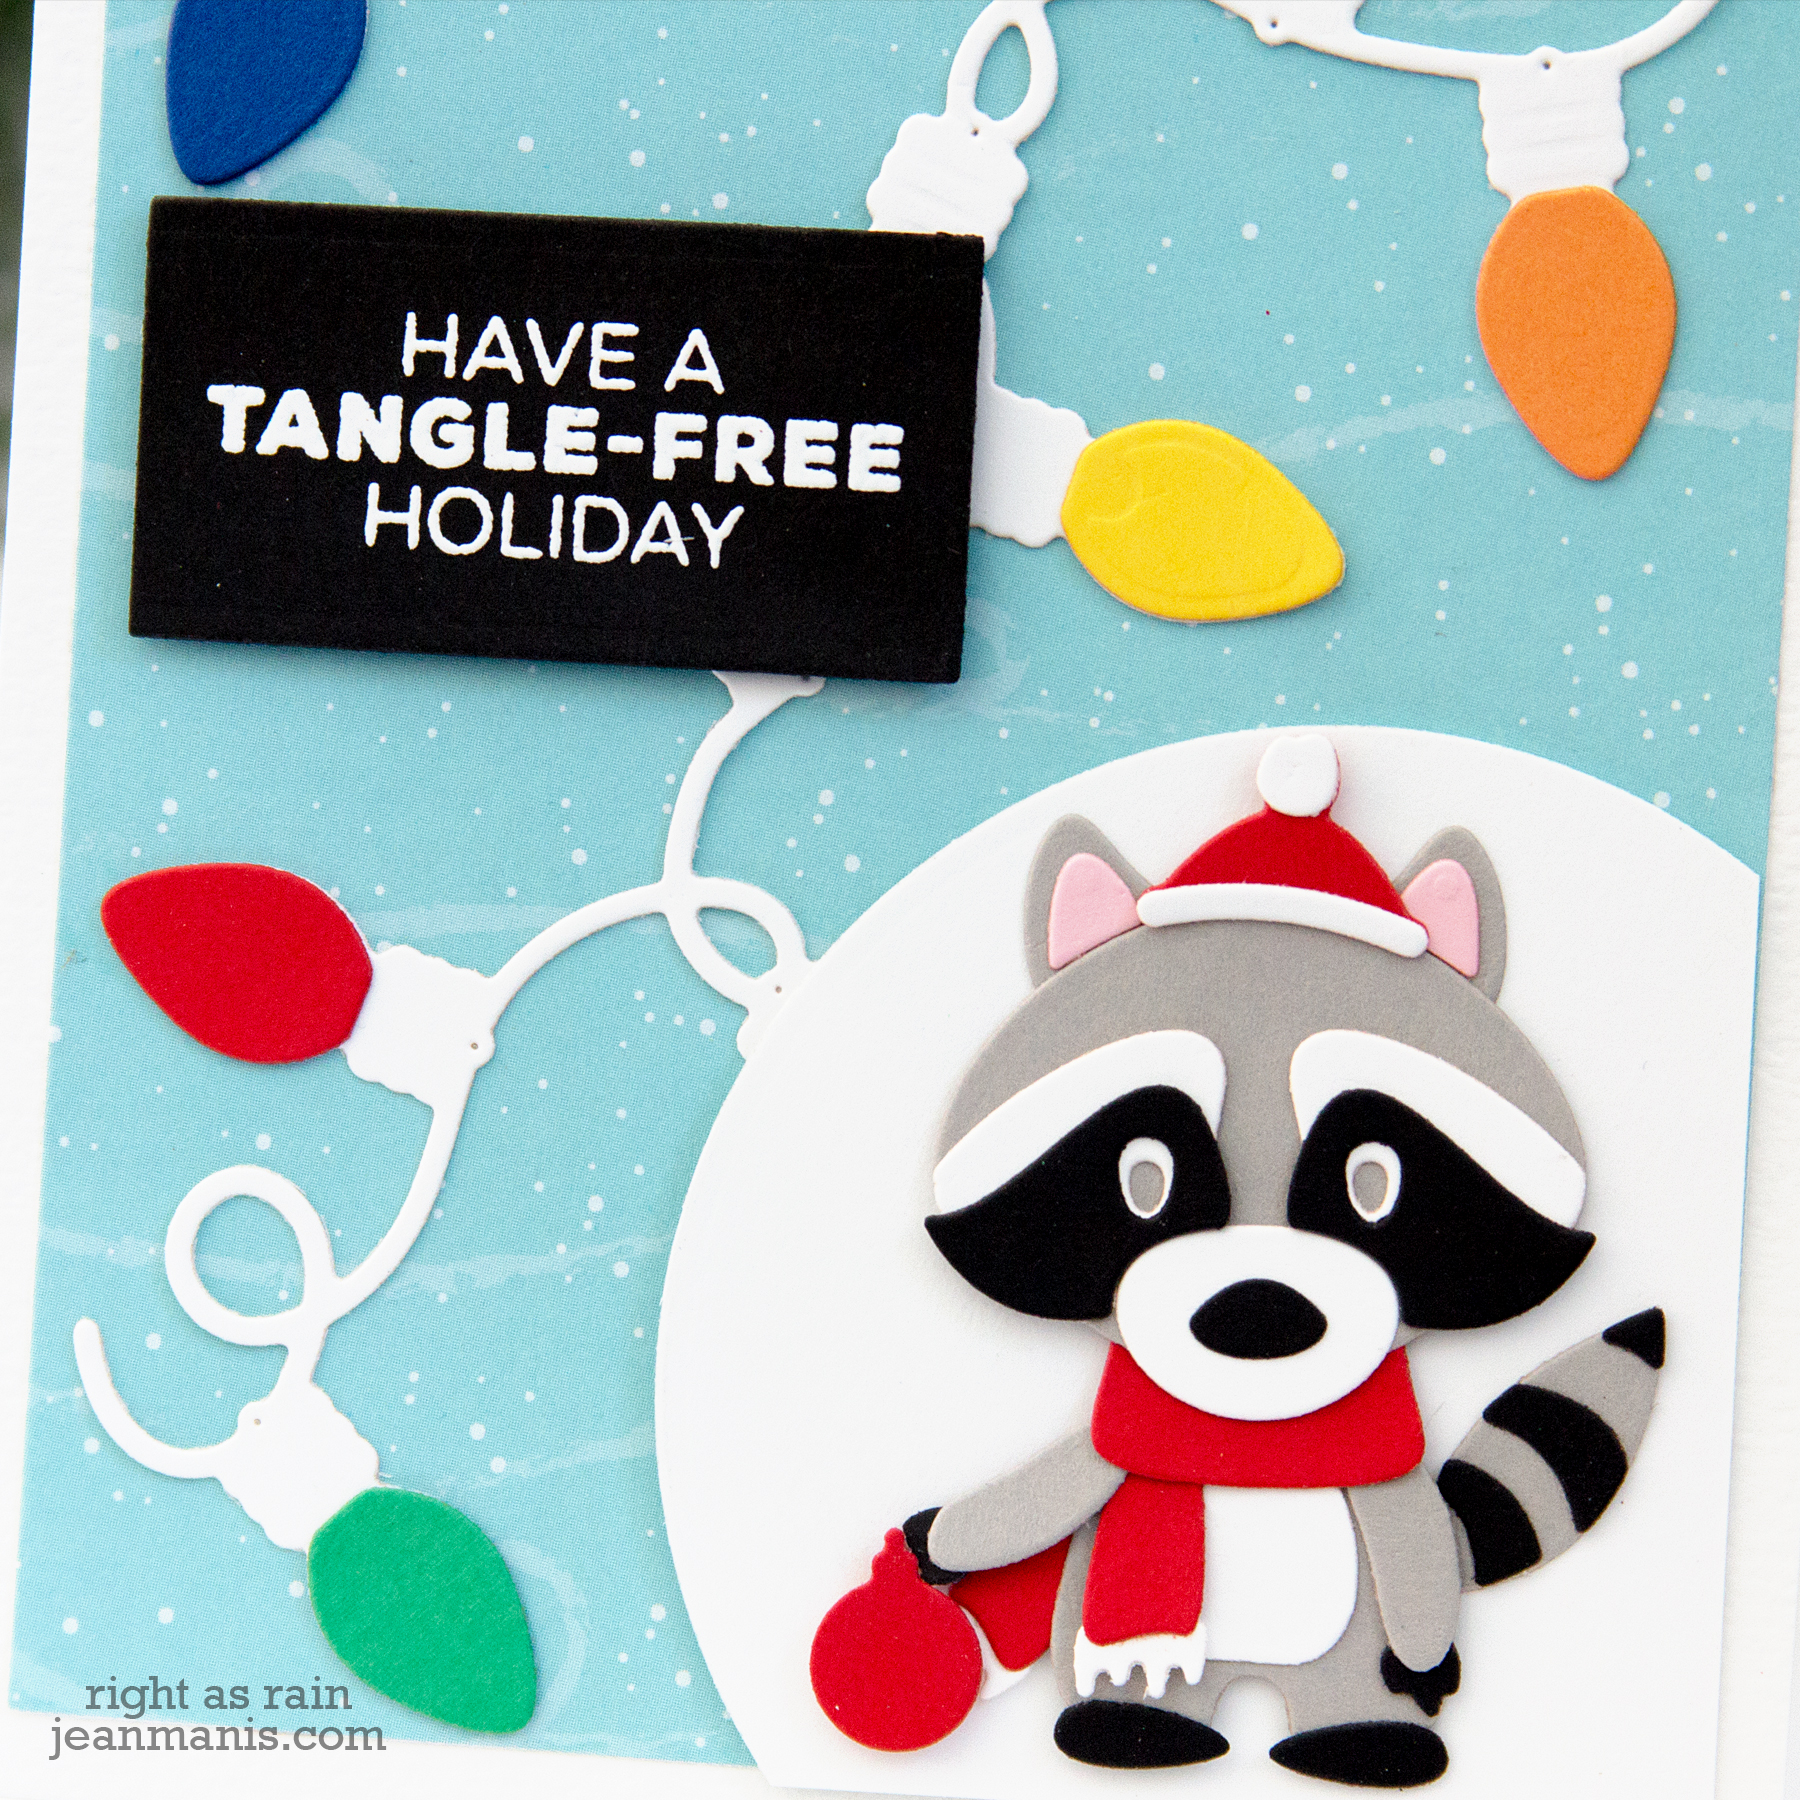 Tangle-Free Holiday - Spellbinders Die-cut Card